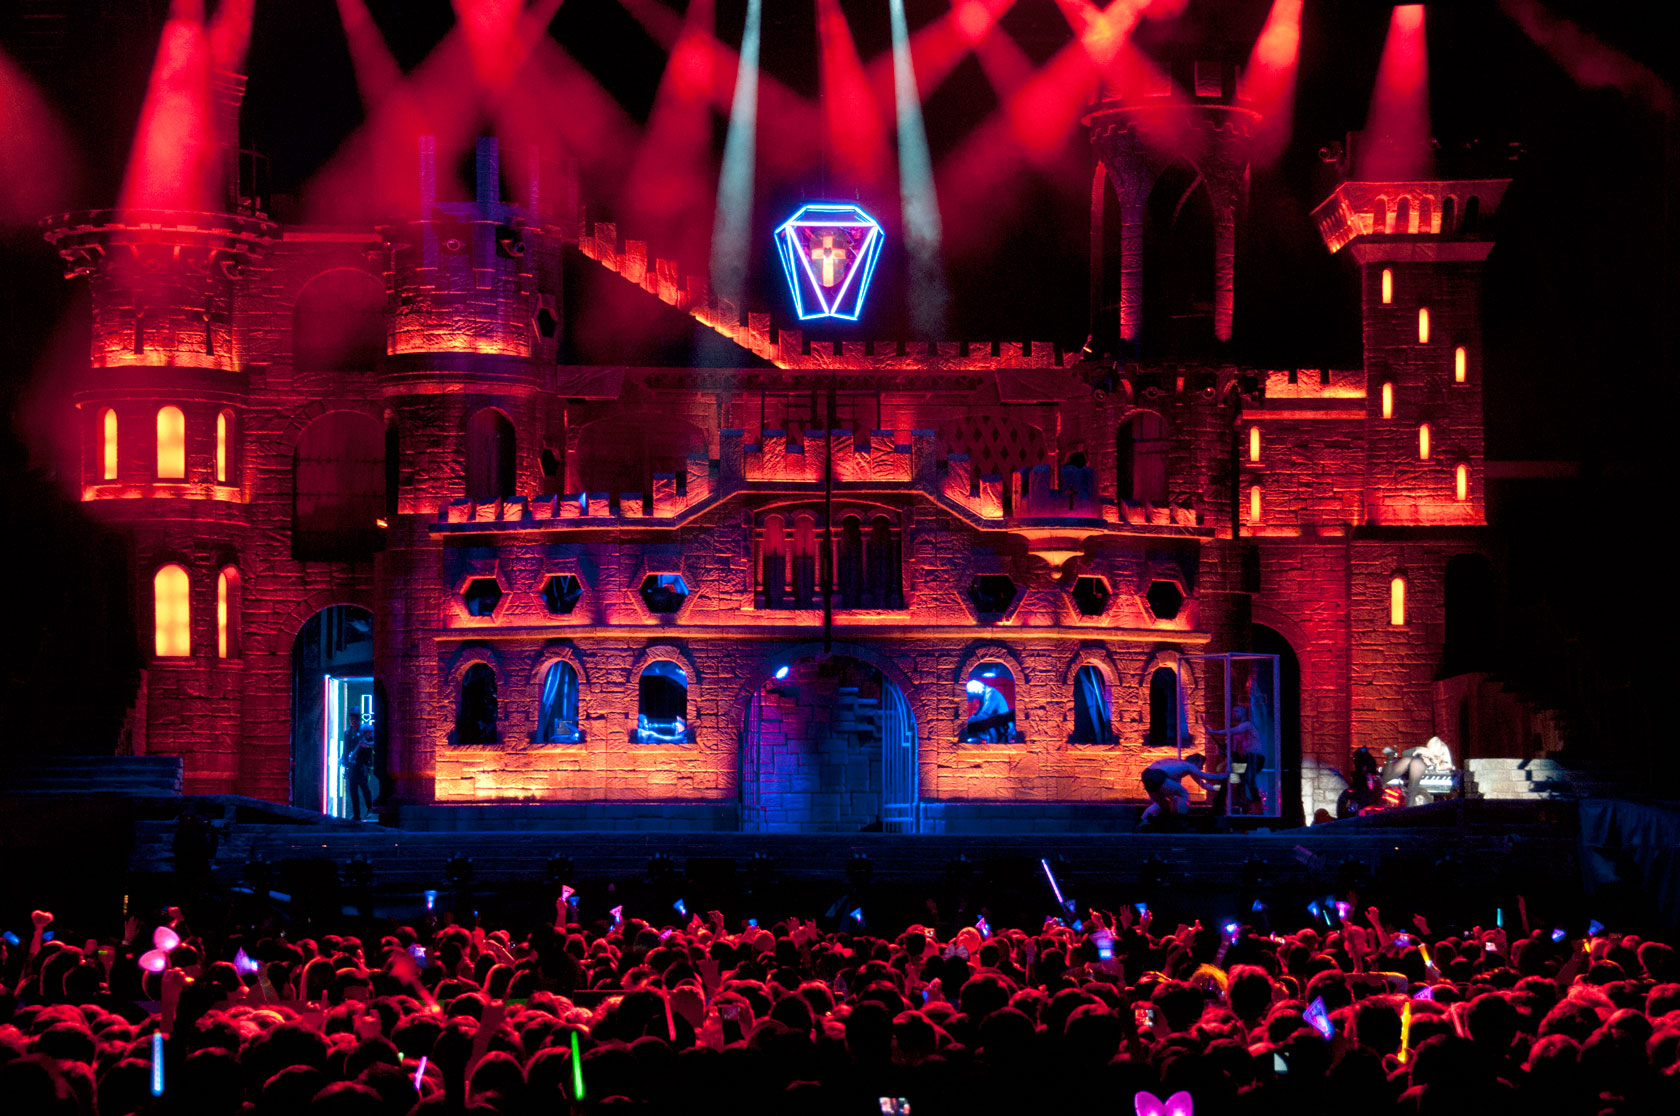 Fotografia retangular colorida. A imagem mostra o palco da Born This Way Ball Tour, um castelo medieval. Ele está iluminado por luzes vermelhas alaranjadas.